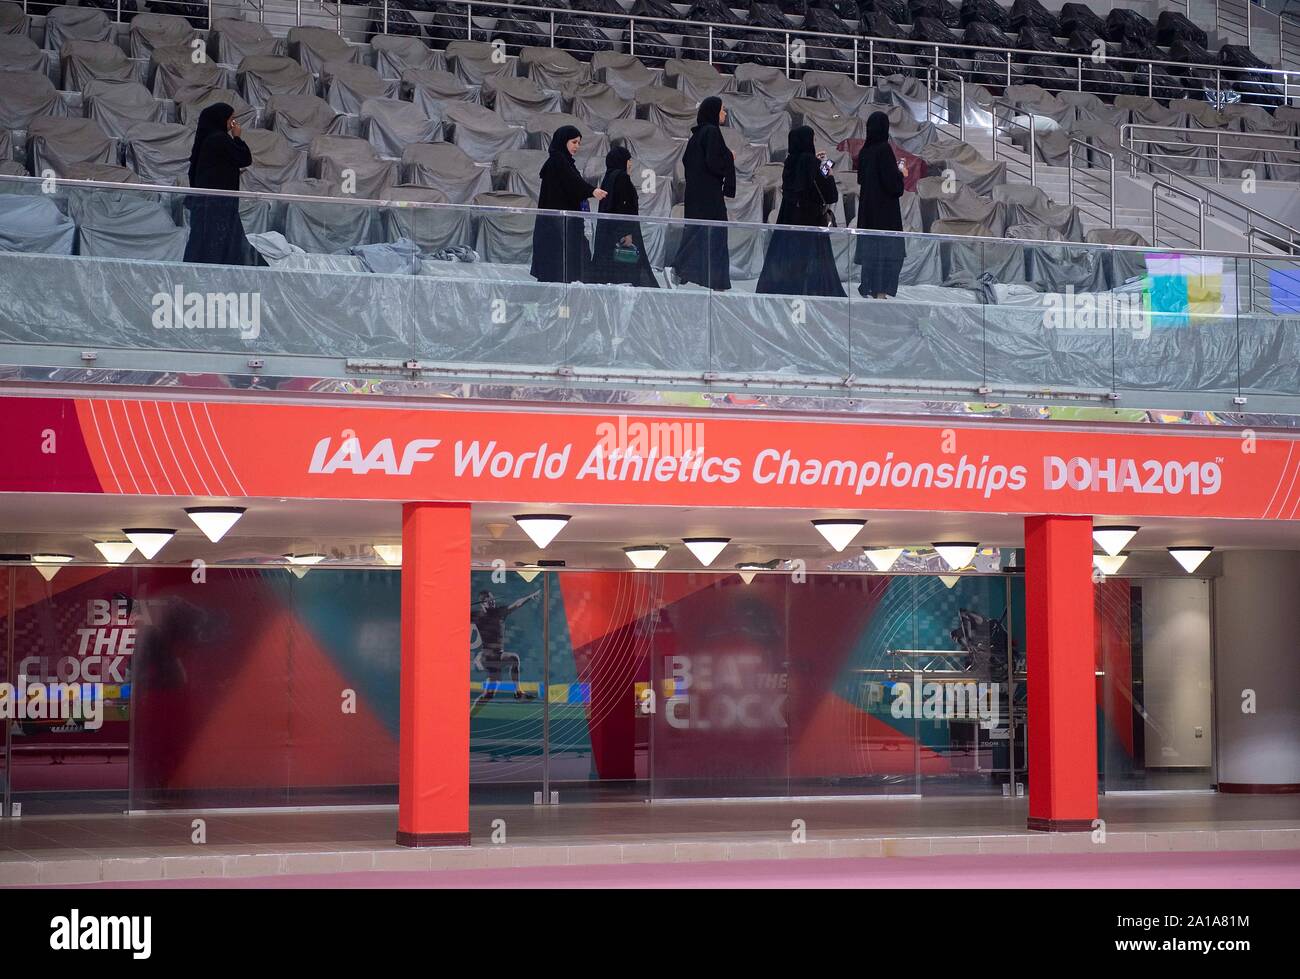 Fonction, femmes voilées sur la tribune dans Khalifa International Stadium, le 25.09.2019 Championnats du monde d'athlétisme 2019 à Doha / Qatar, à partir de la 27.09. - 10.10.2019. Dans le monde d'utilisation | Banque D'Images